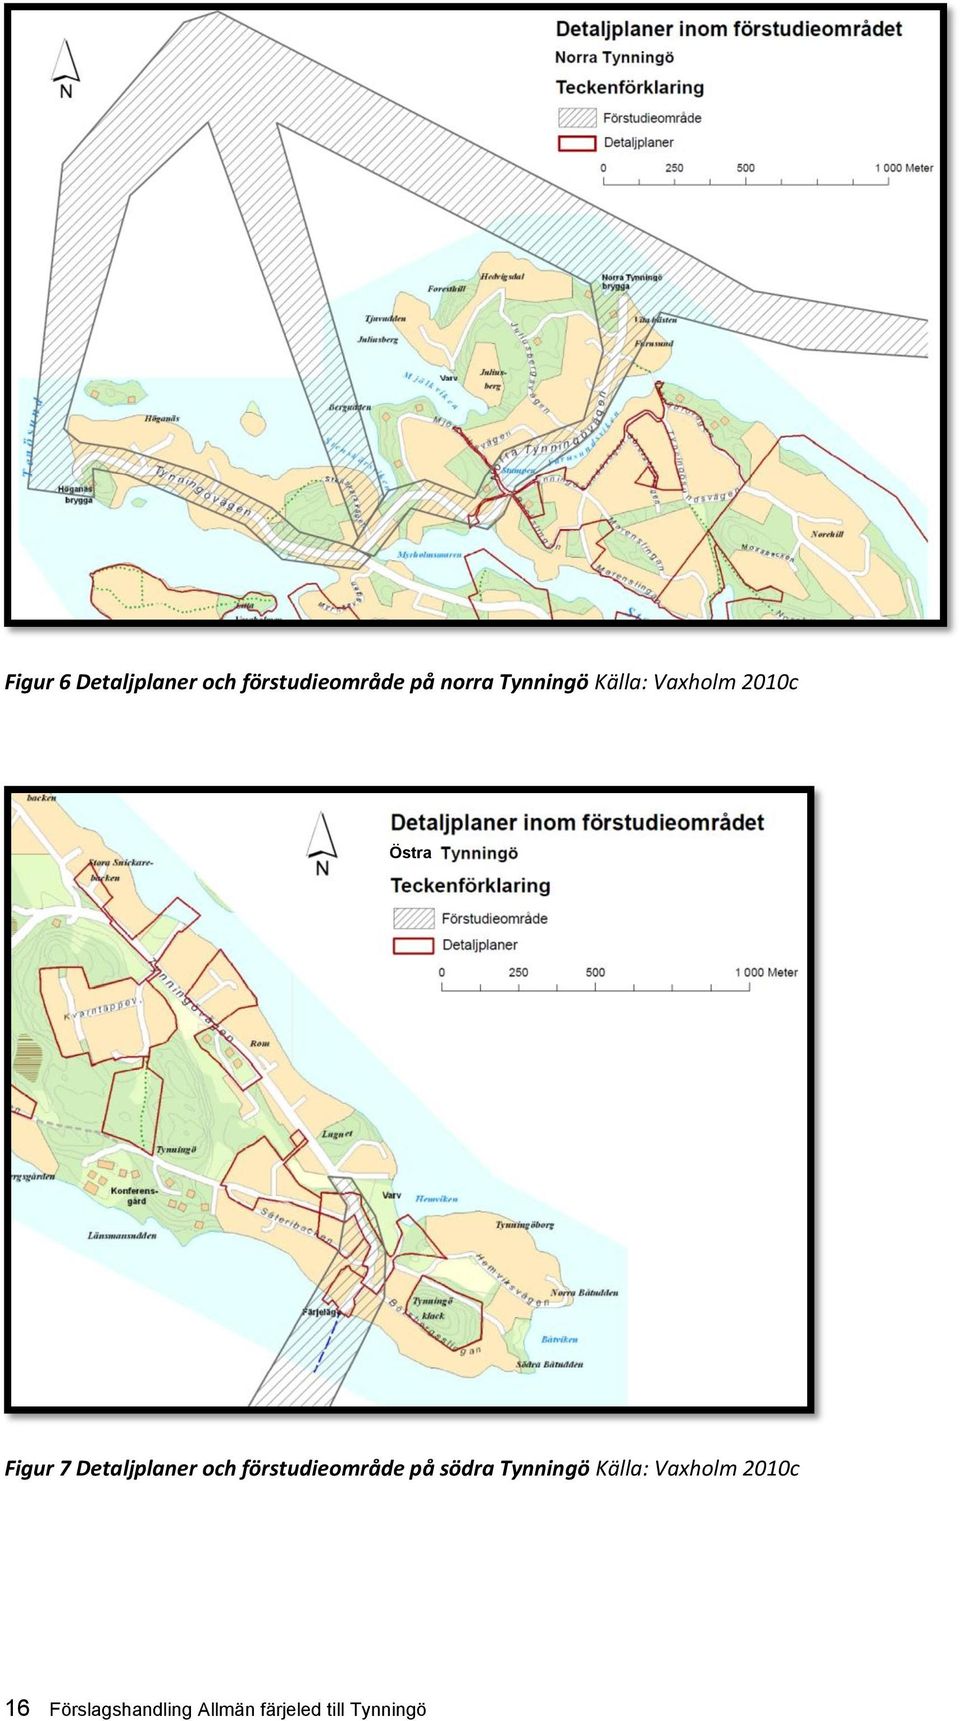 Detaljplaner och förstudieområde på södra Tynningö